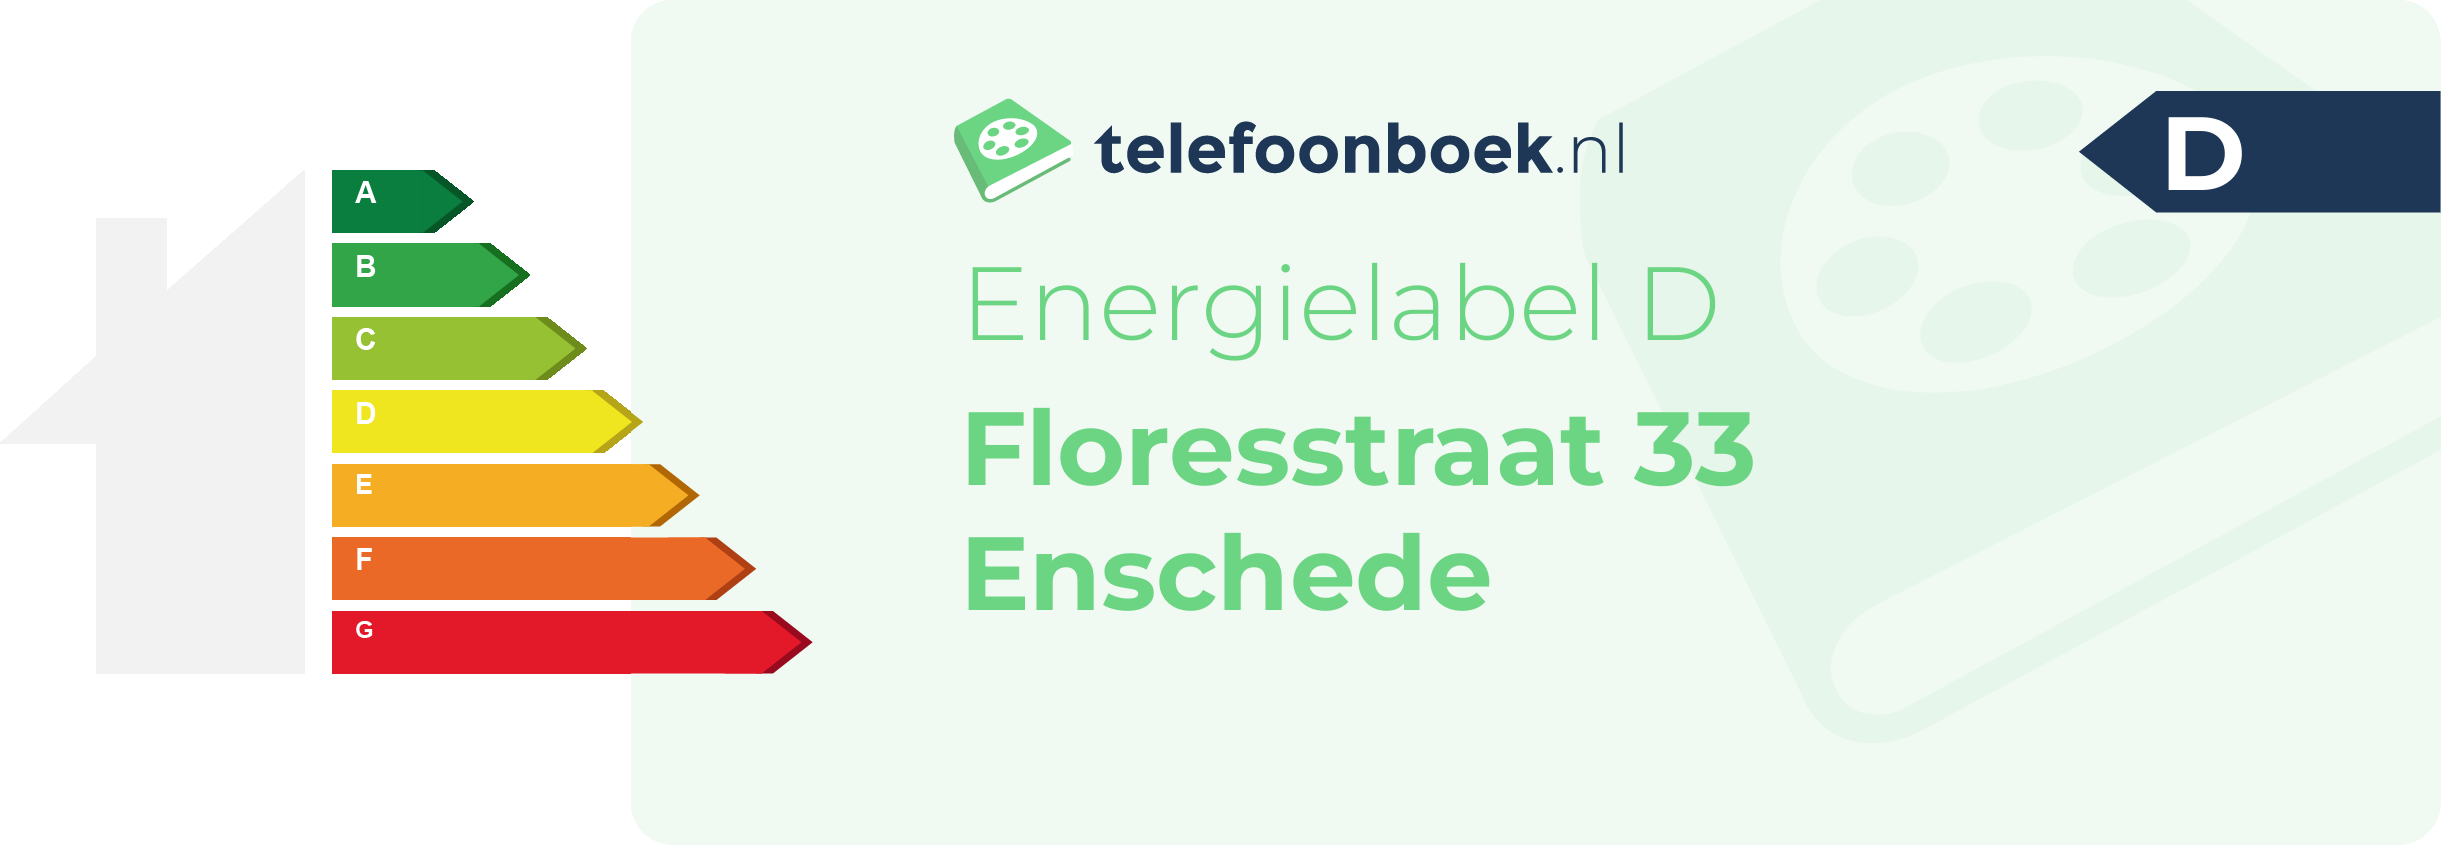 Energielabel Floresstraat 33 Enschede